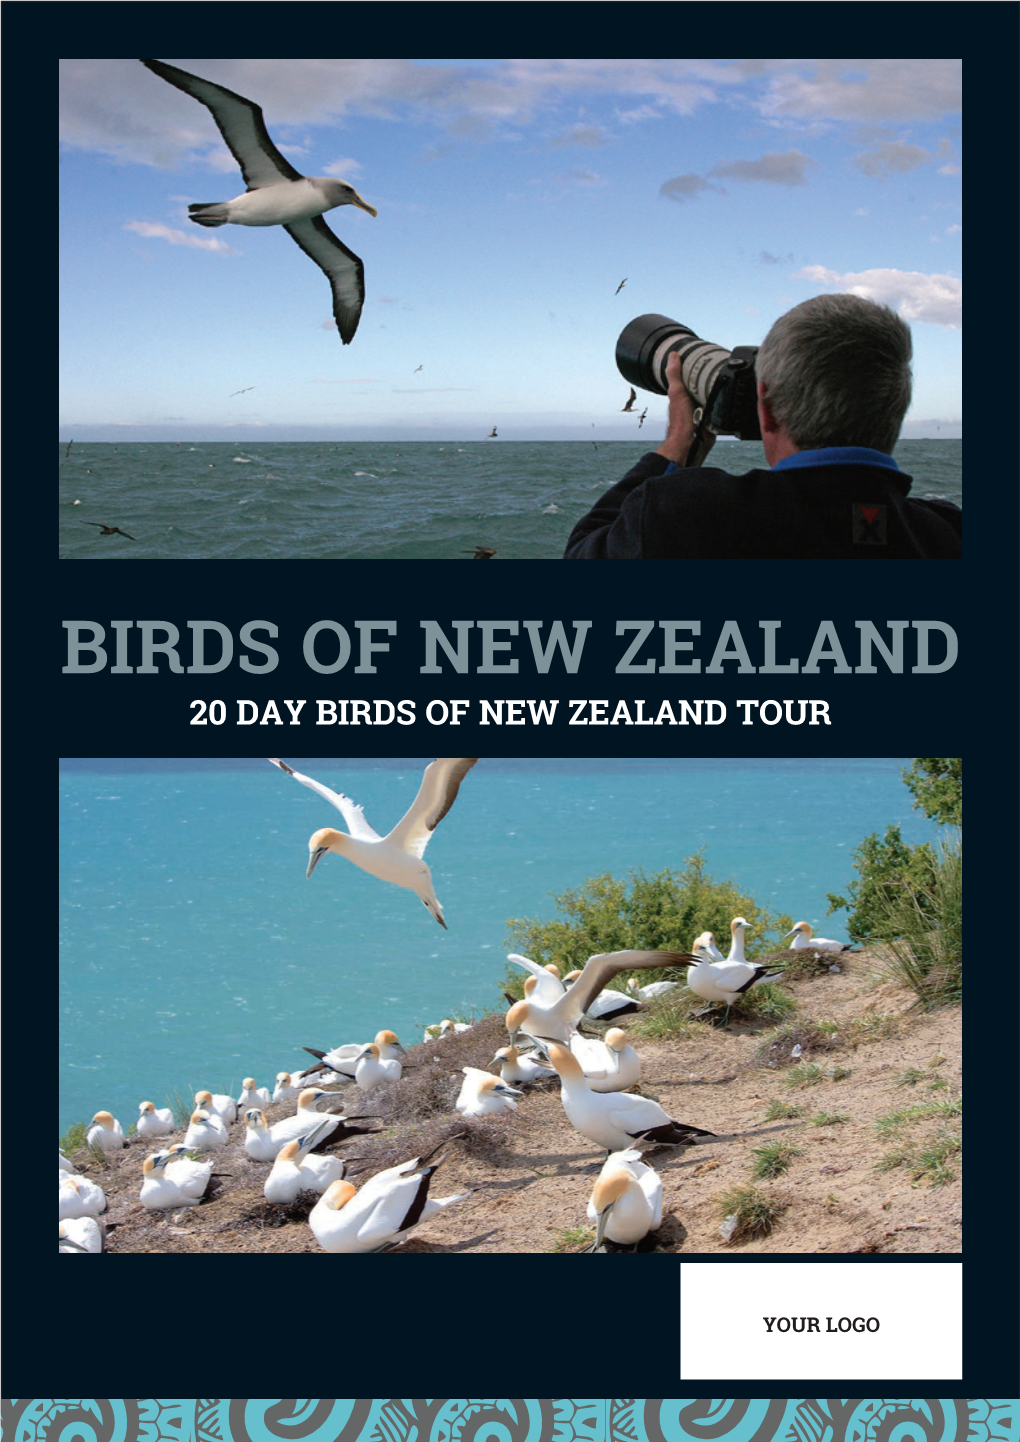 Birds of New Zealand 20 Day Birds of New Zealand Tour